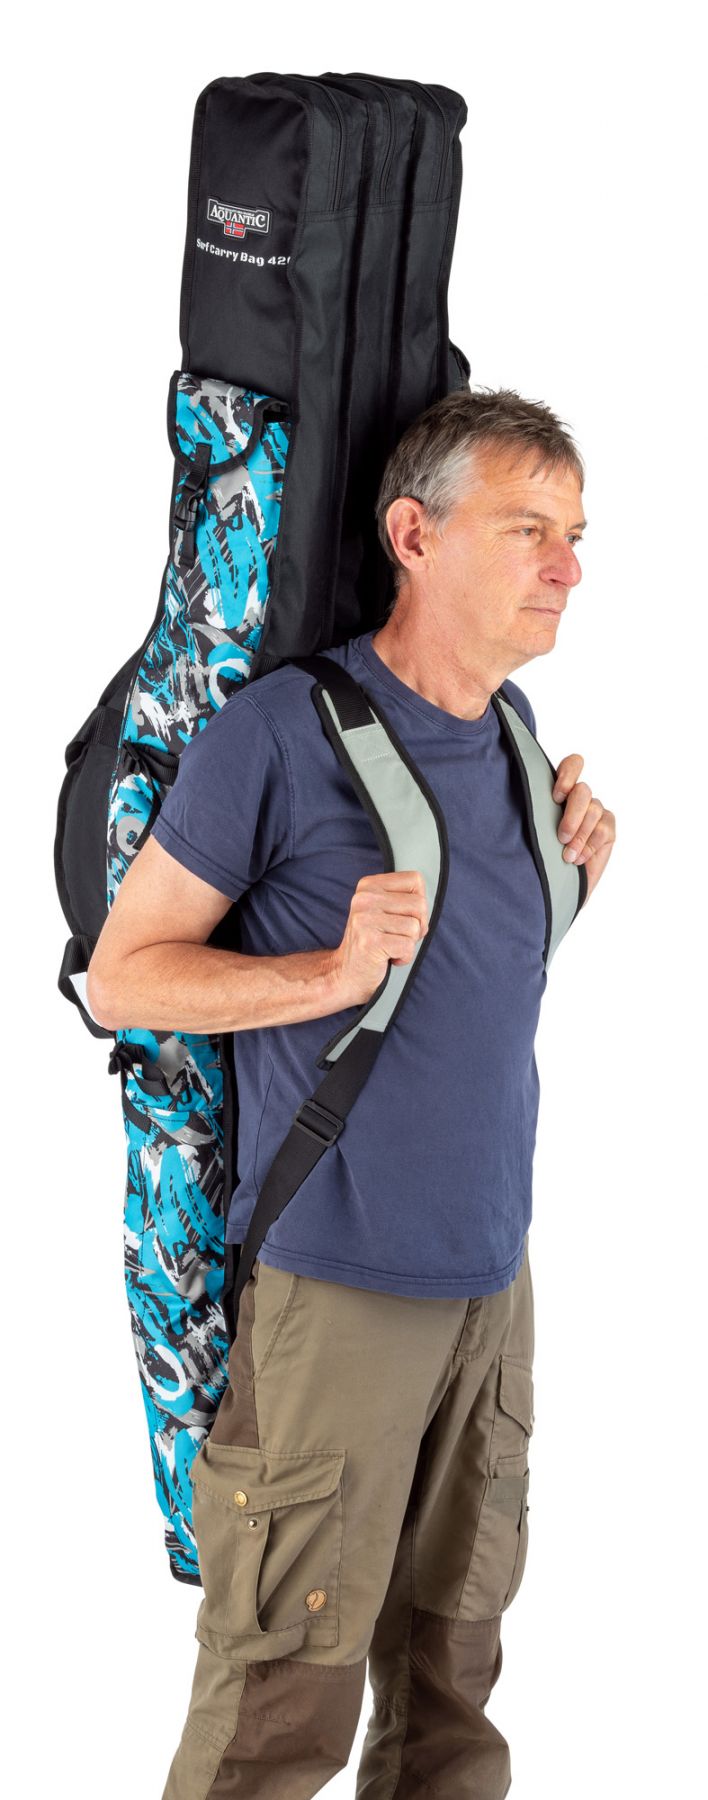 Aquantic Surf Rod Carry Bag